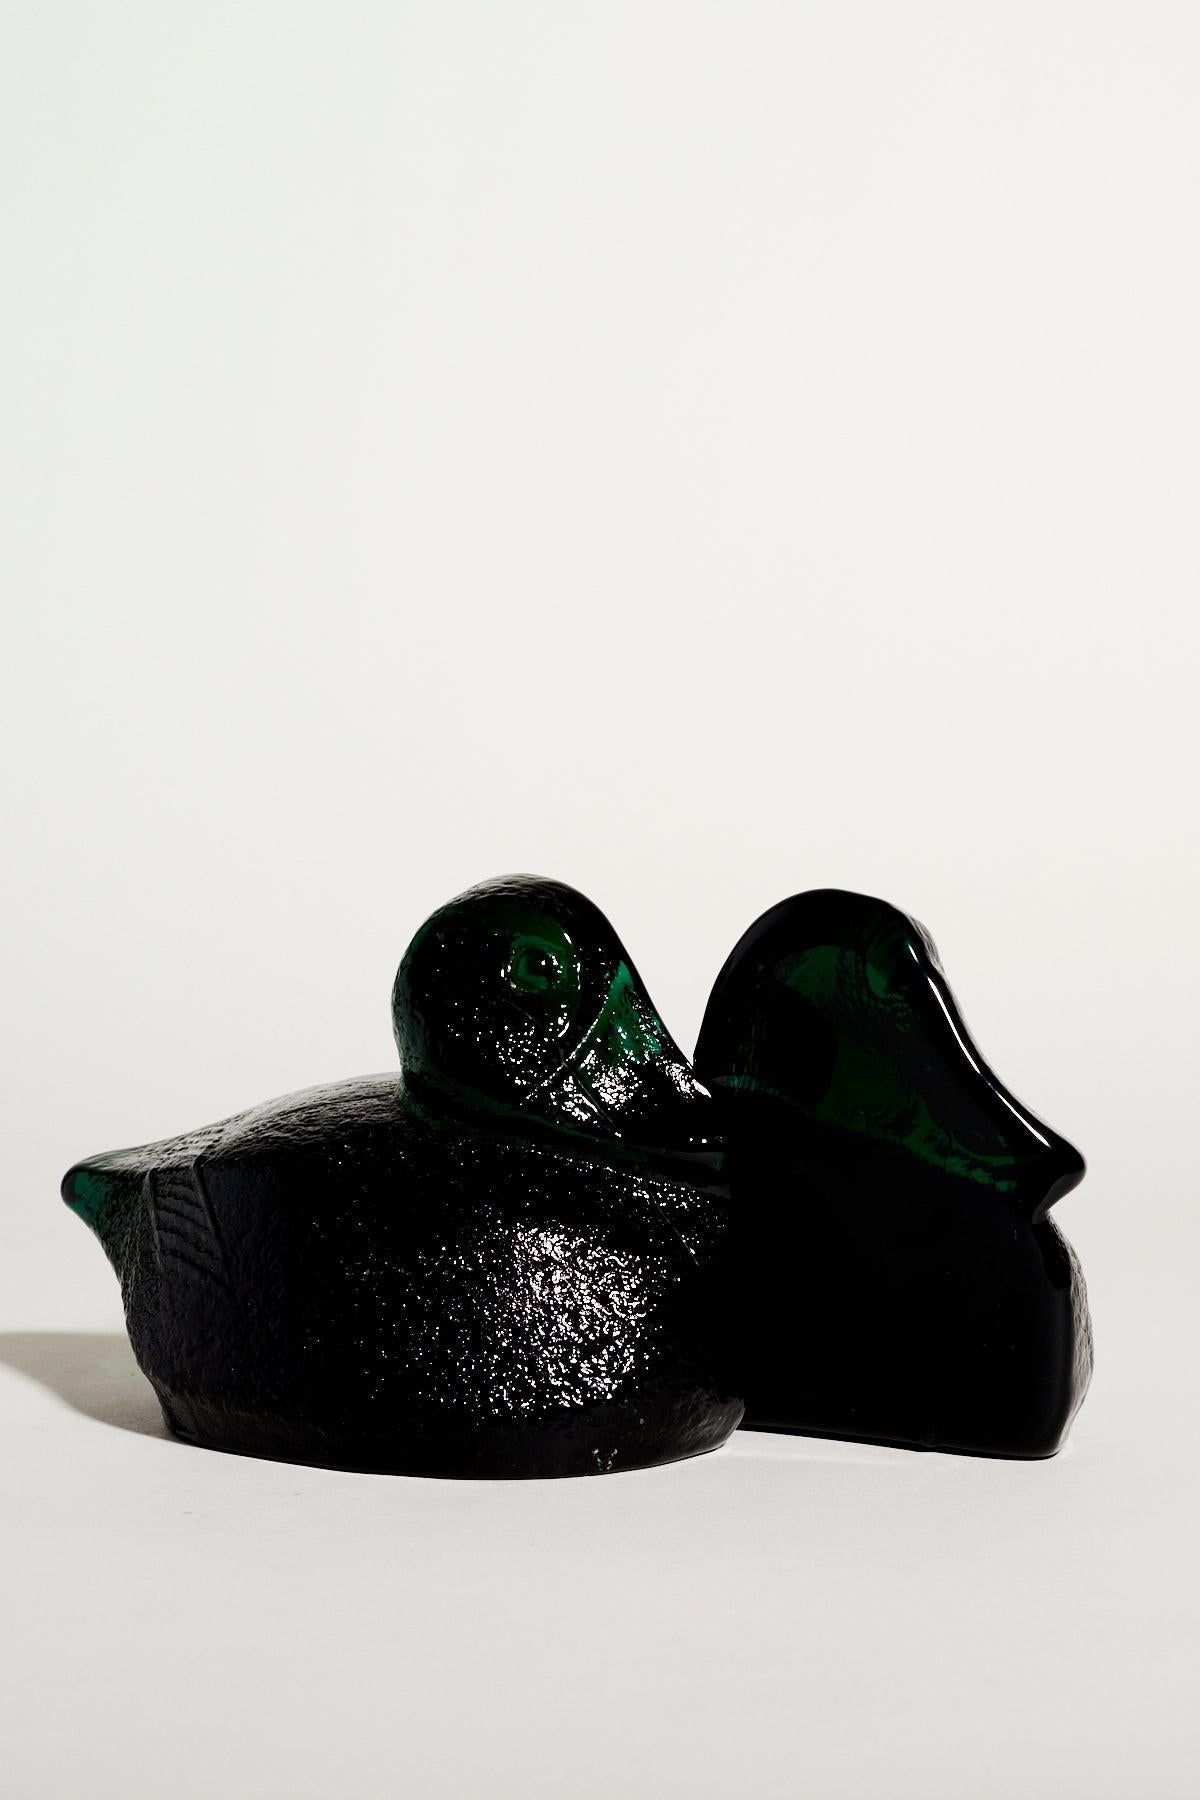 Dark emerald green textured glass duck bookends.